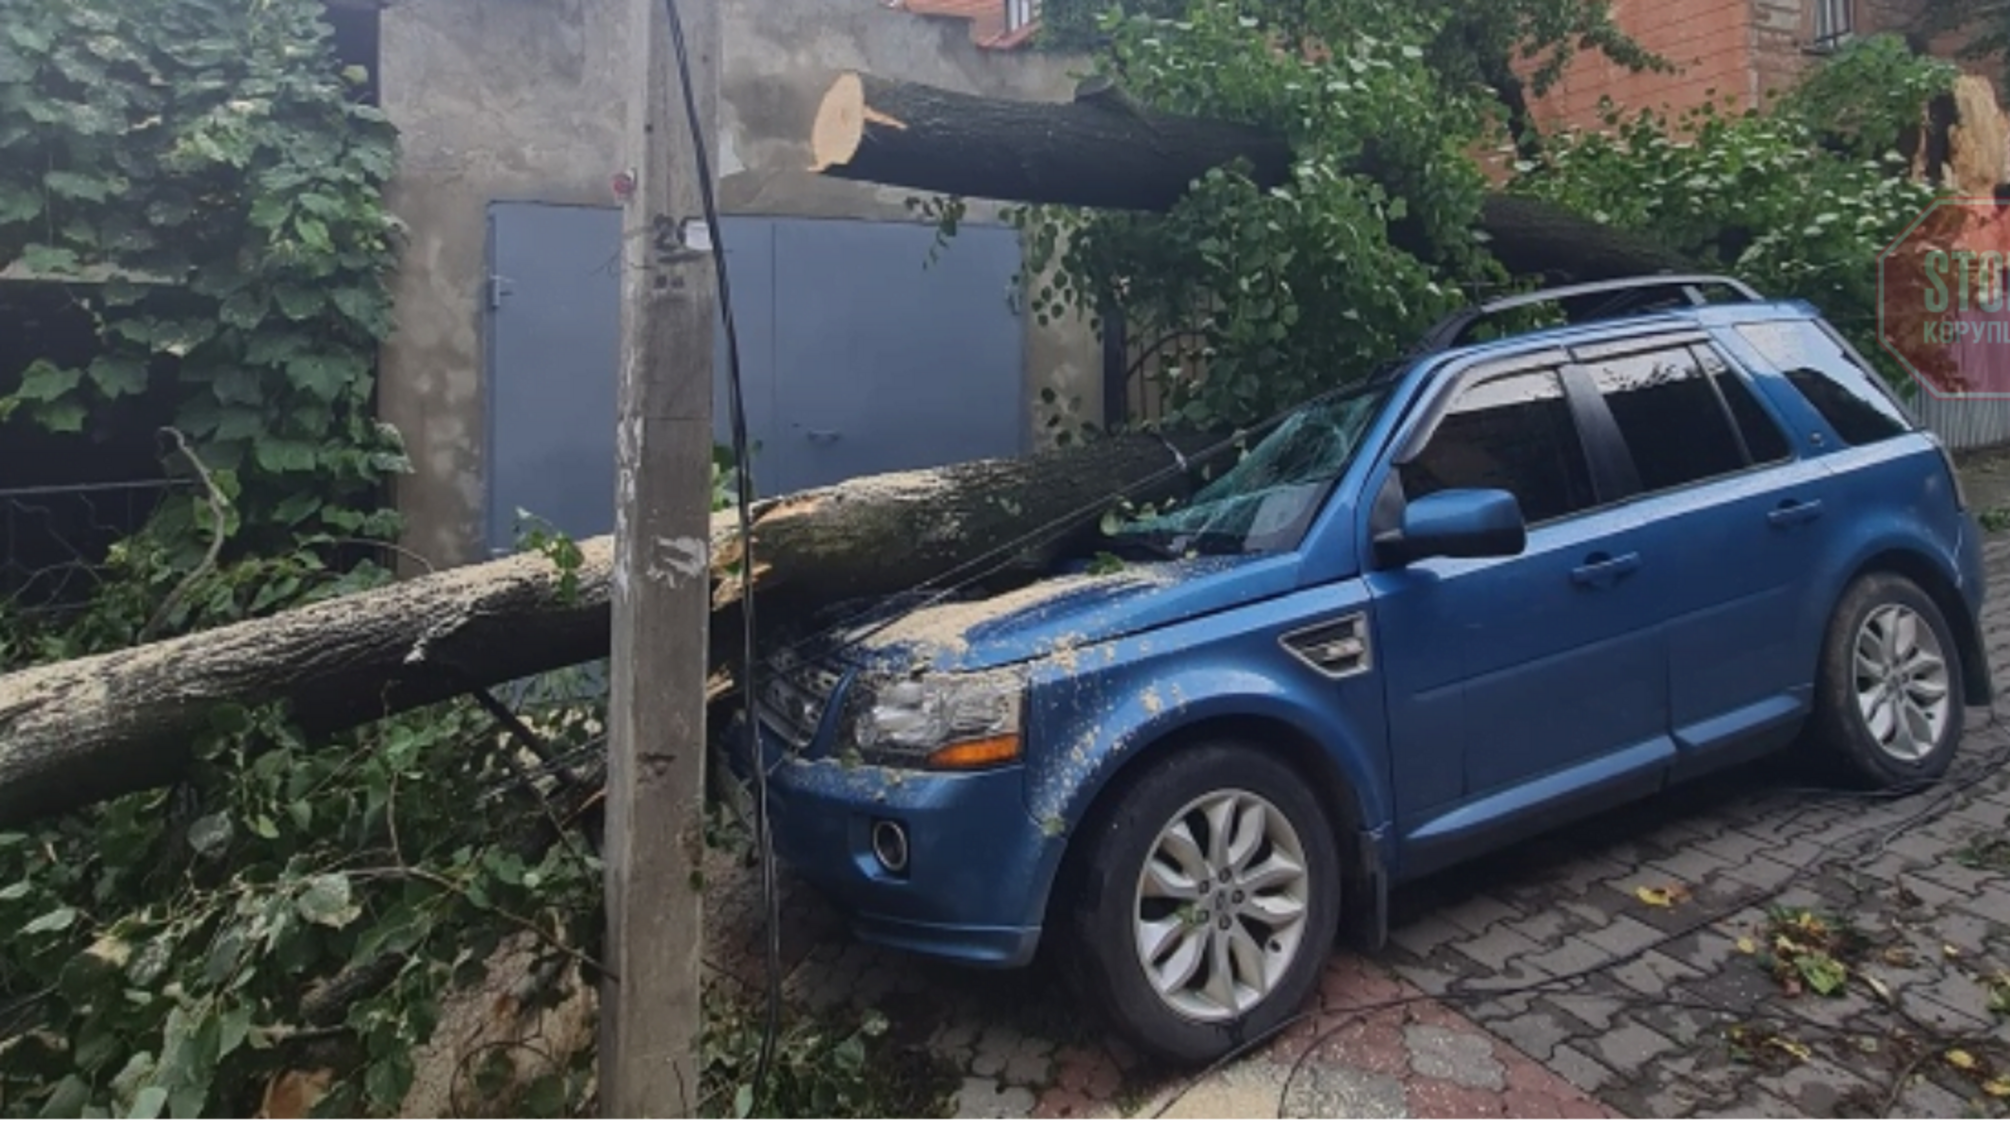 Повалені дерева та затоплені вулиці: на Чернівці налетіла злива (відео)